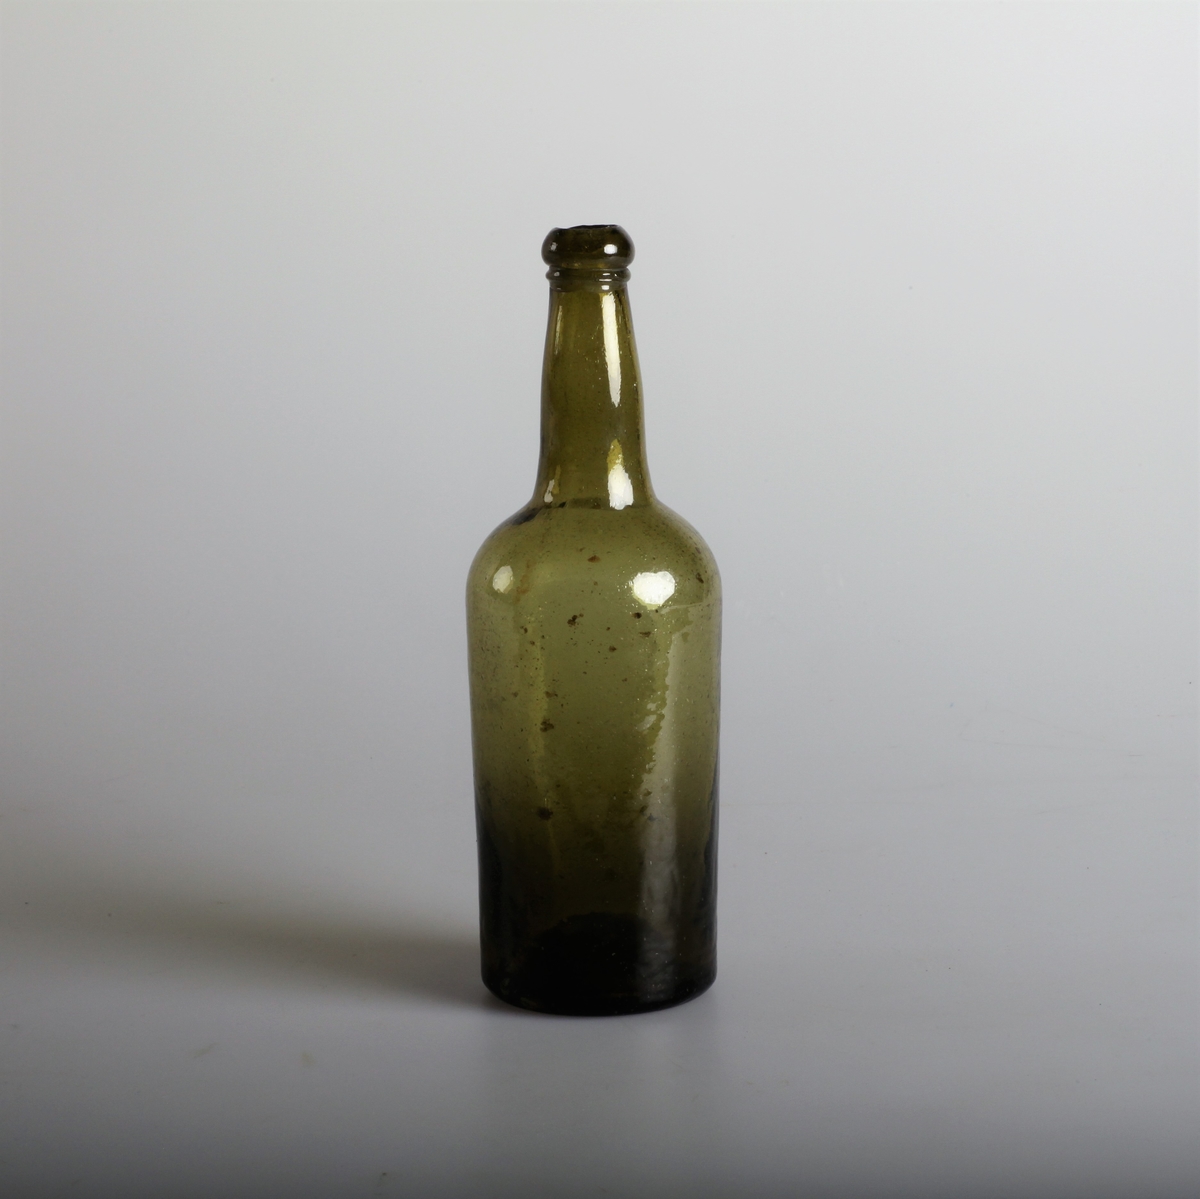 Sylindrisk flaske laget av grønt, gjennomsiktig simpel glassmasse.